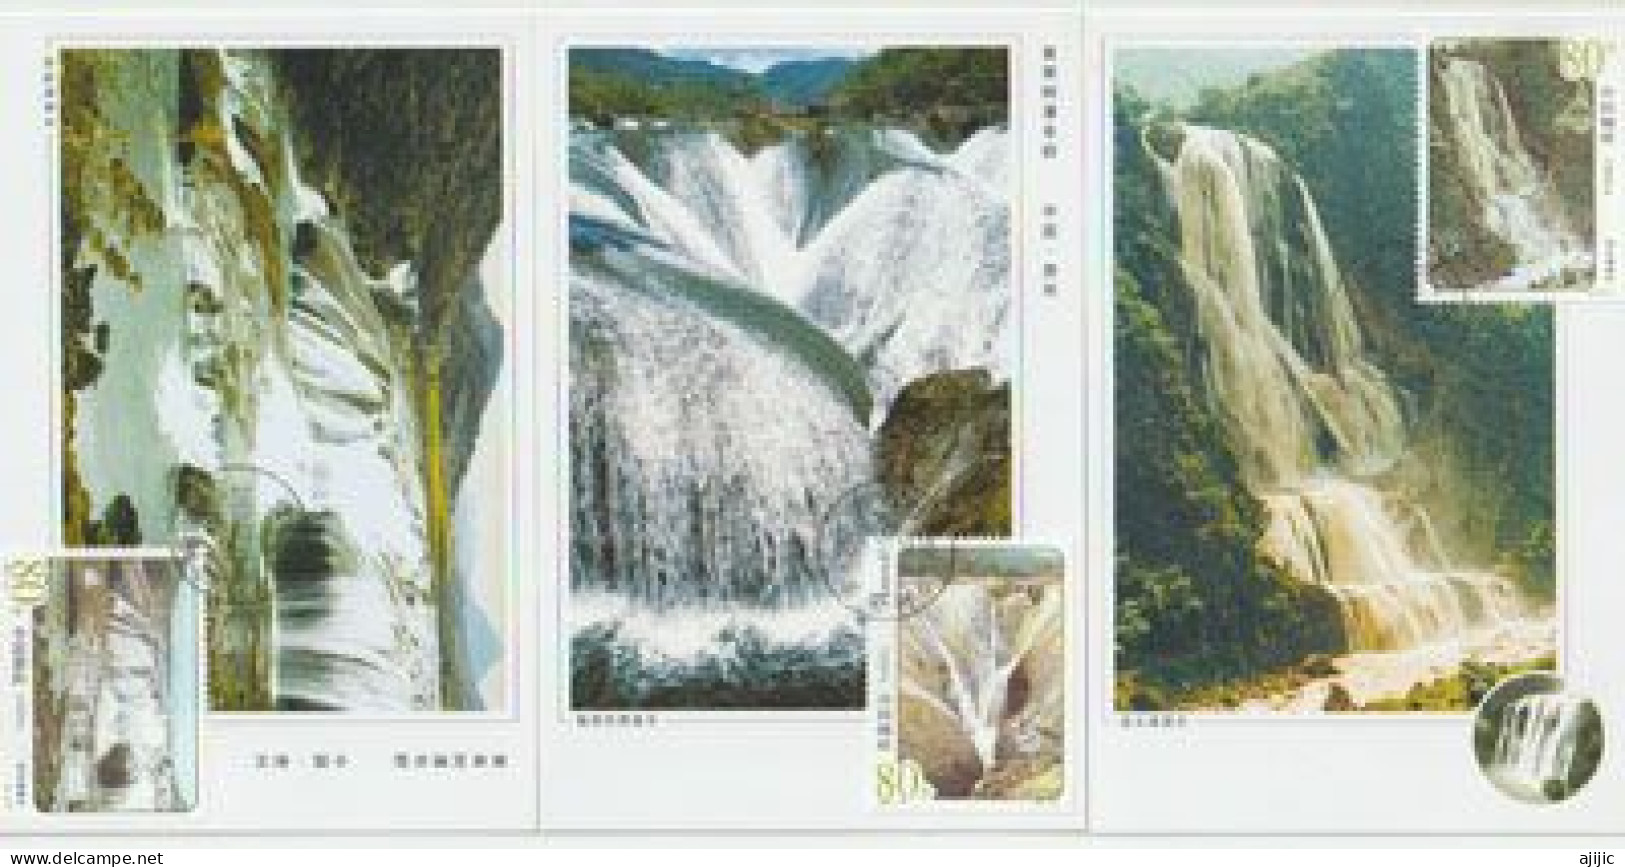 Cascades Célèbres De Chine .  3 Maximum-cards - Maximumkarten